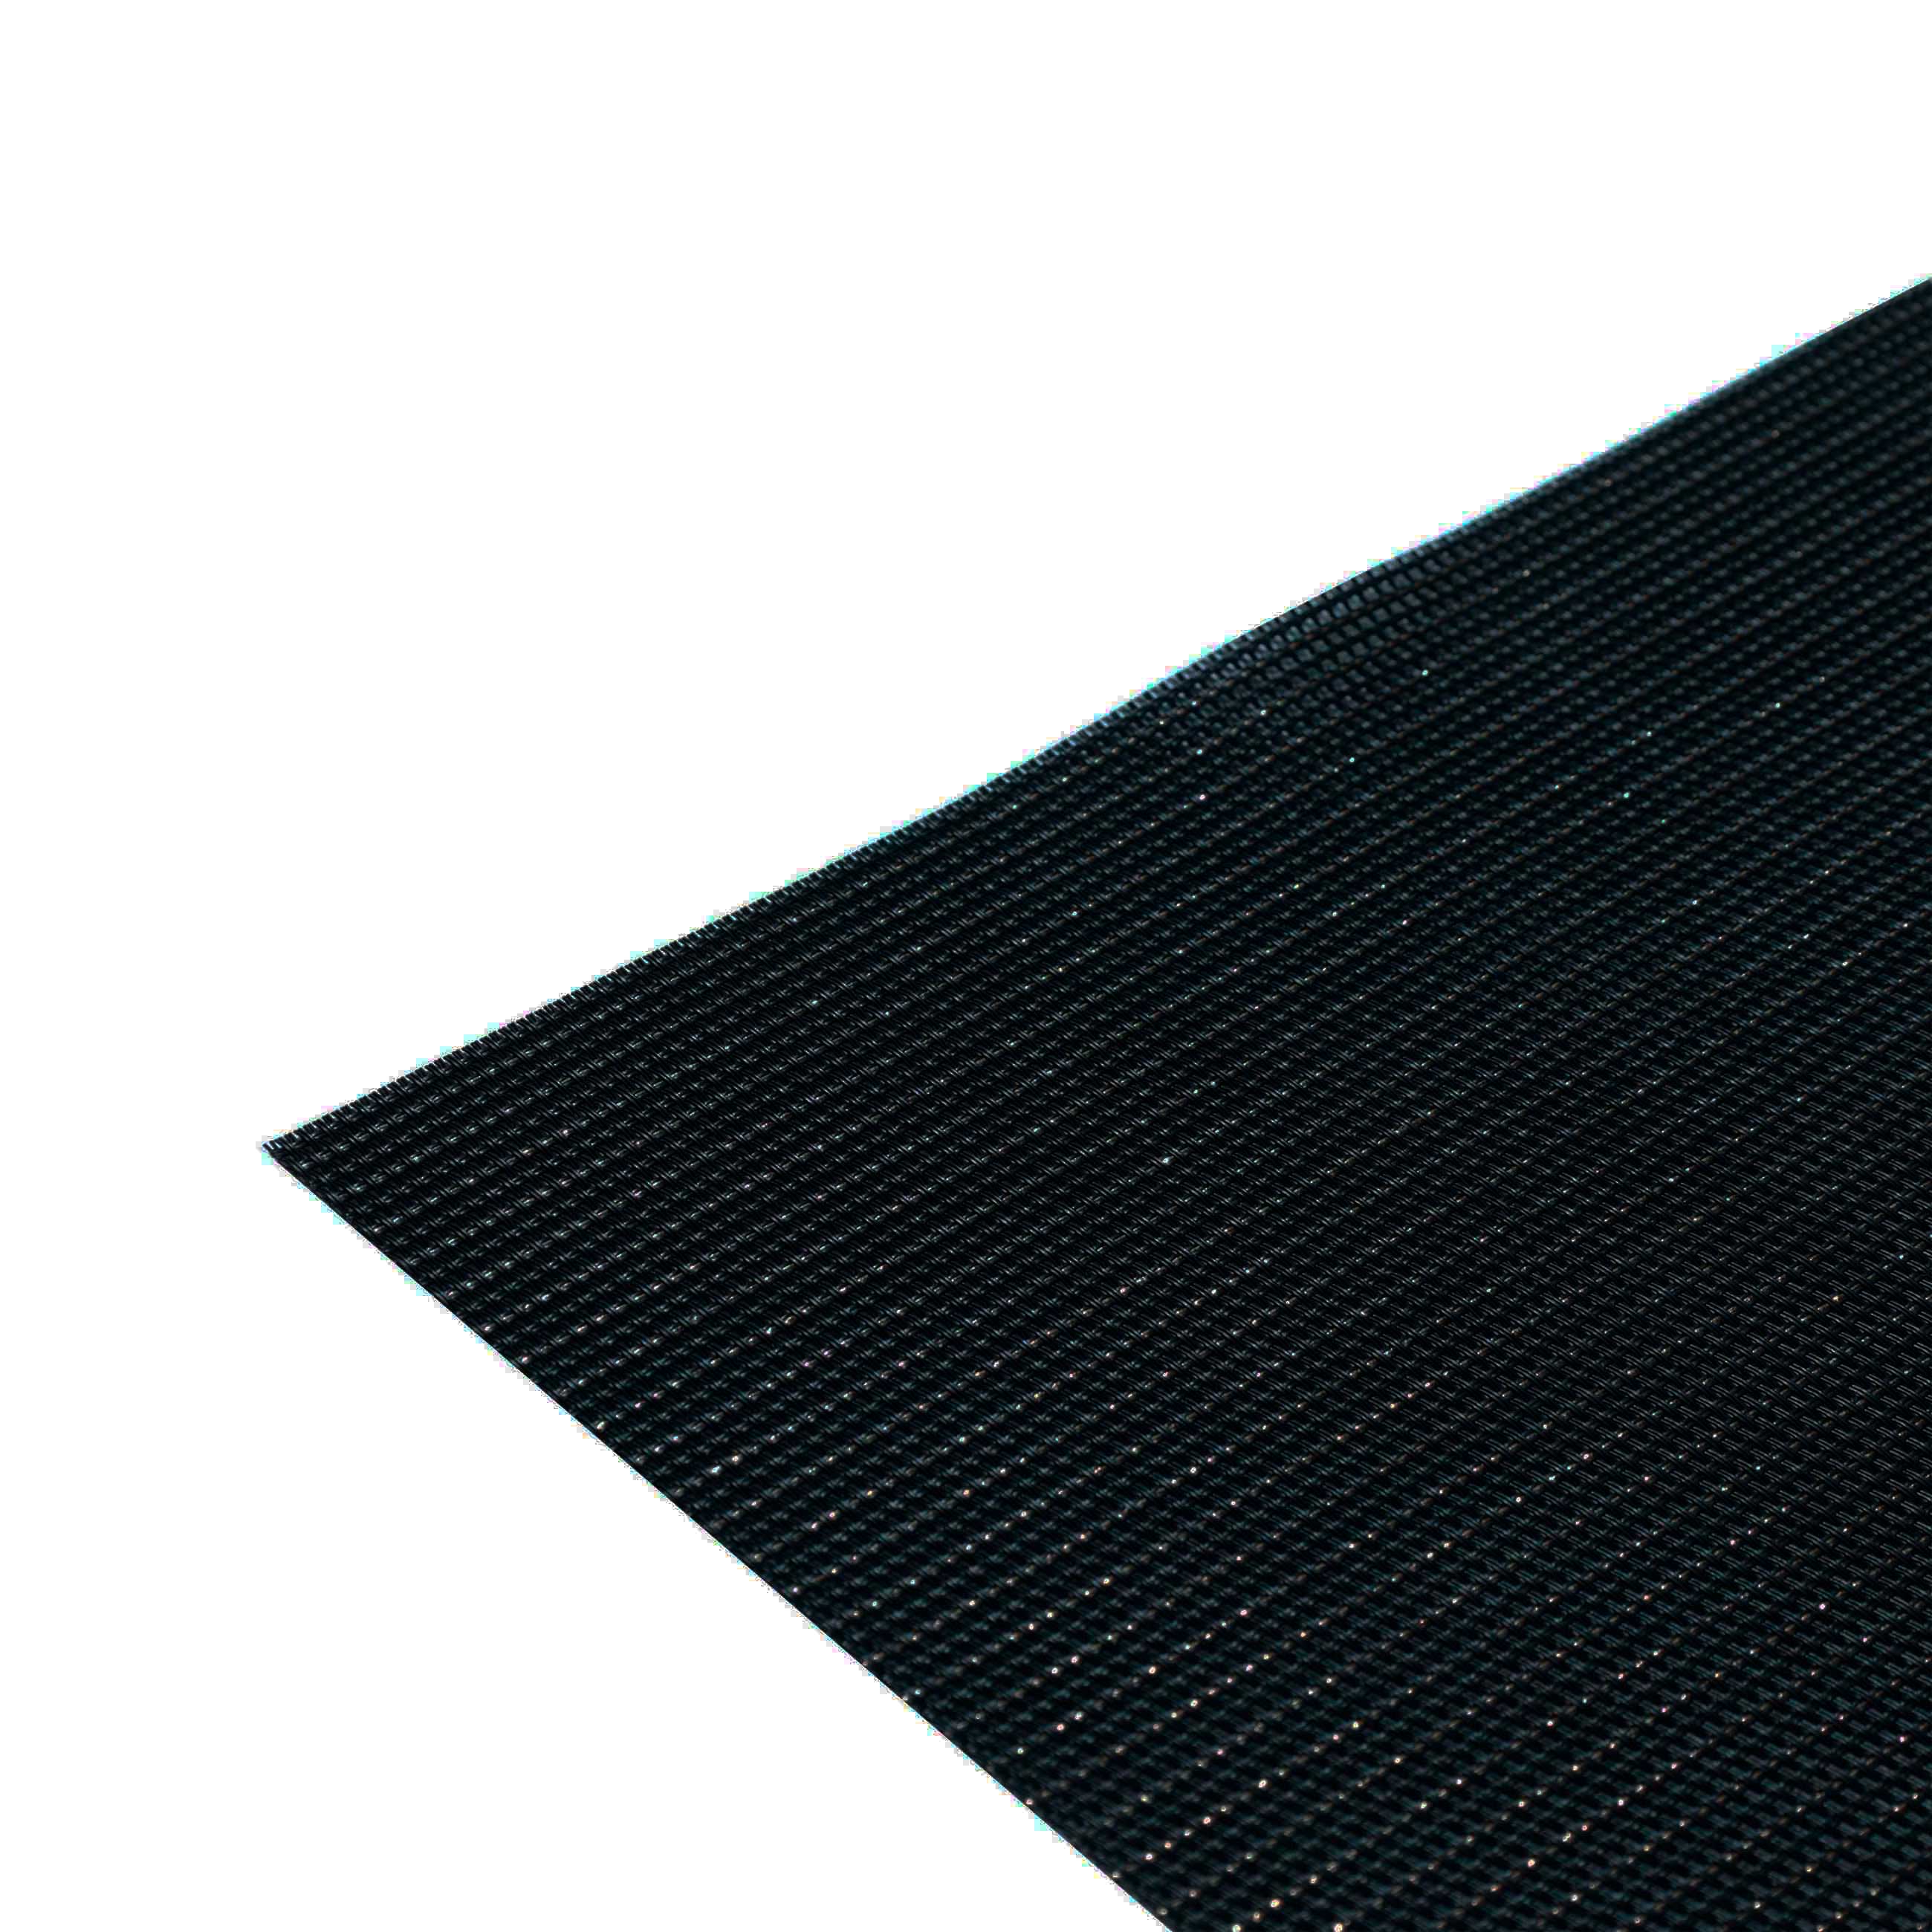 Салфетка под приборы, 30х45 см, ПВХ, прямоугольная, черная, Золотистая нить, Solid изображение № 2